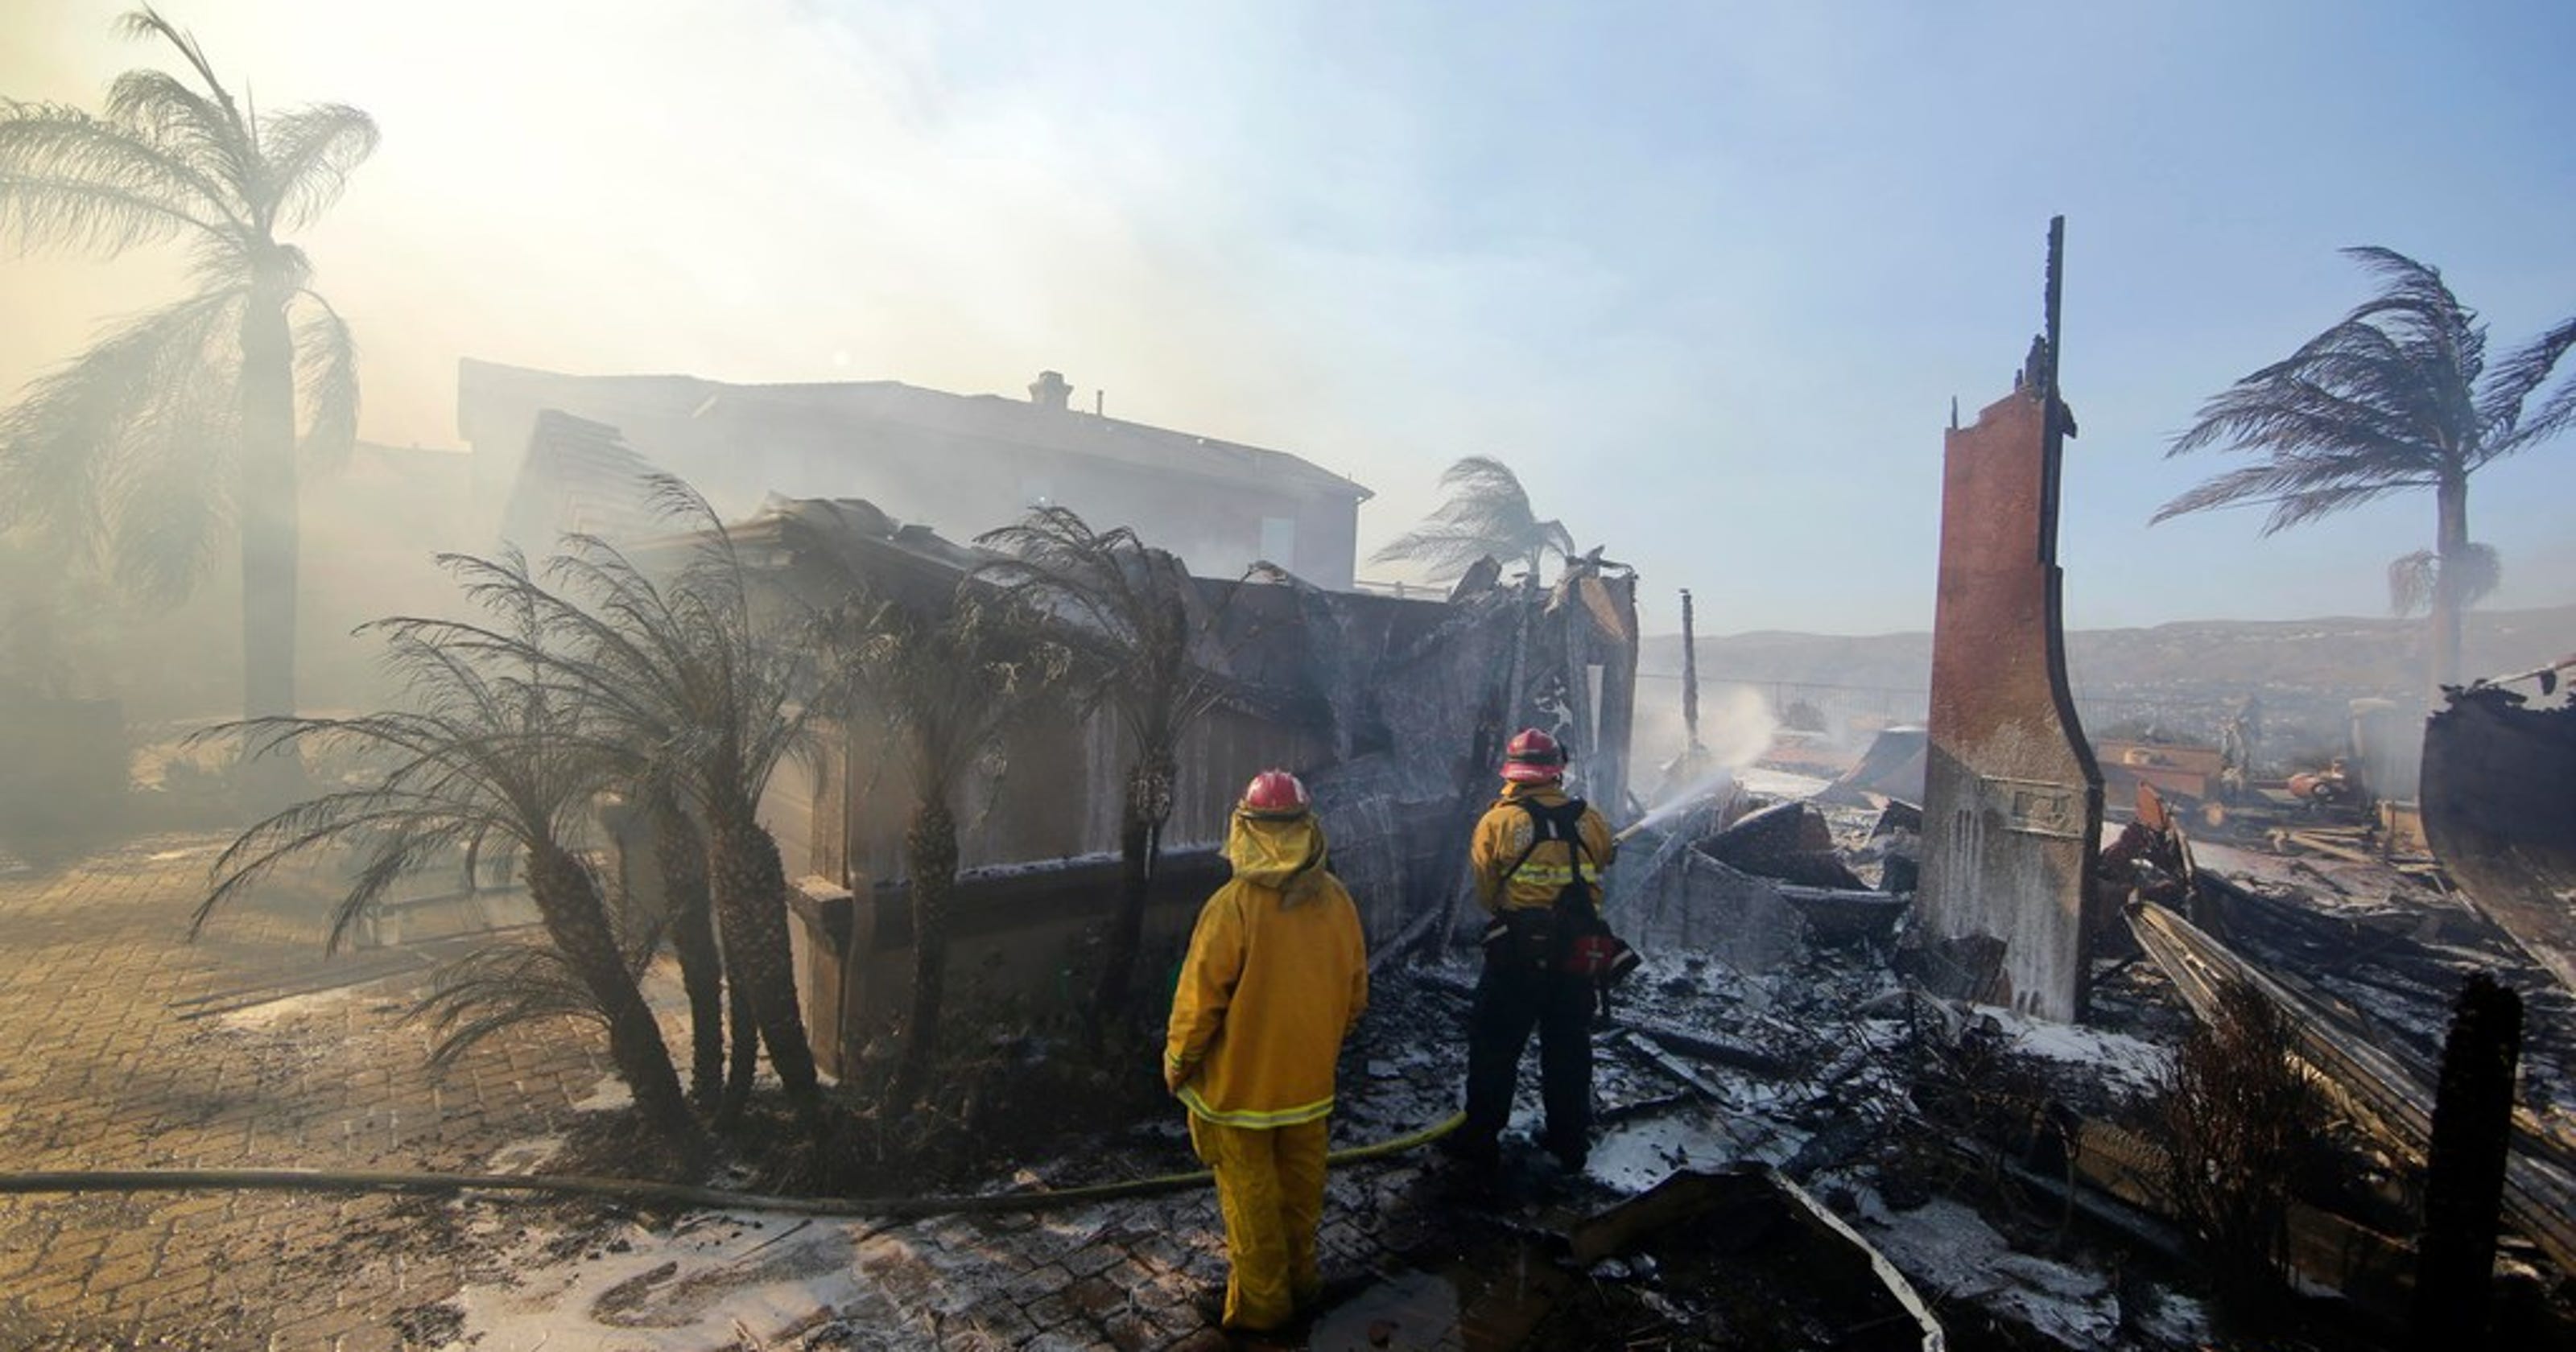 Disneyland: Will it stay open during Anaheim Hills fire?